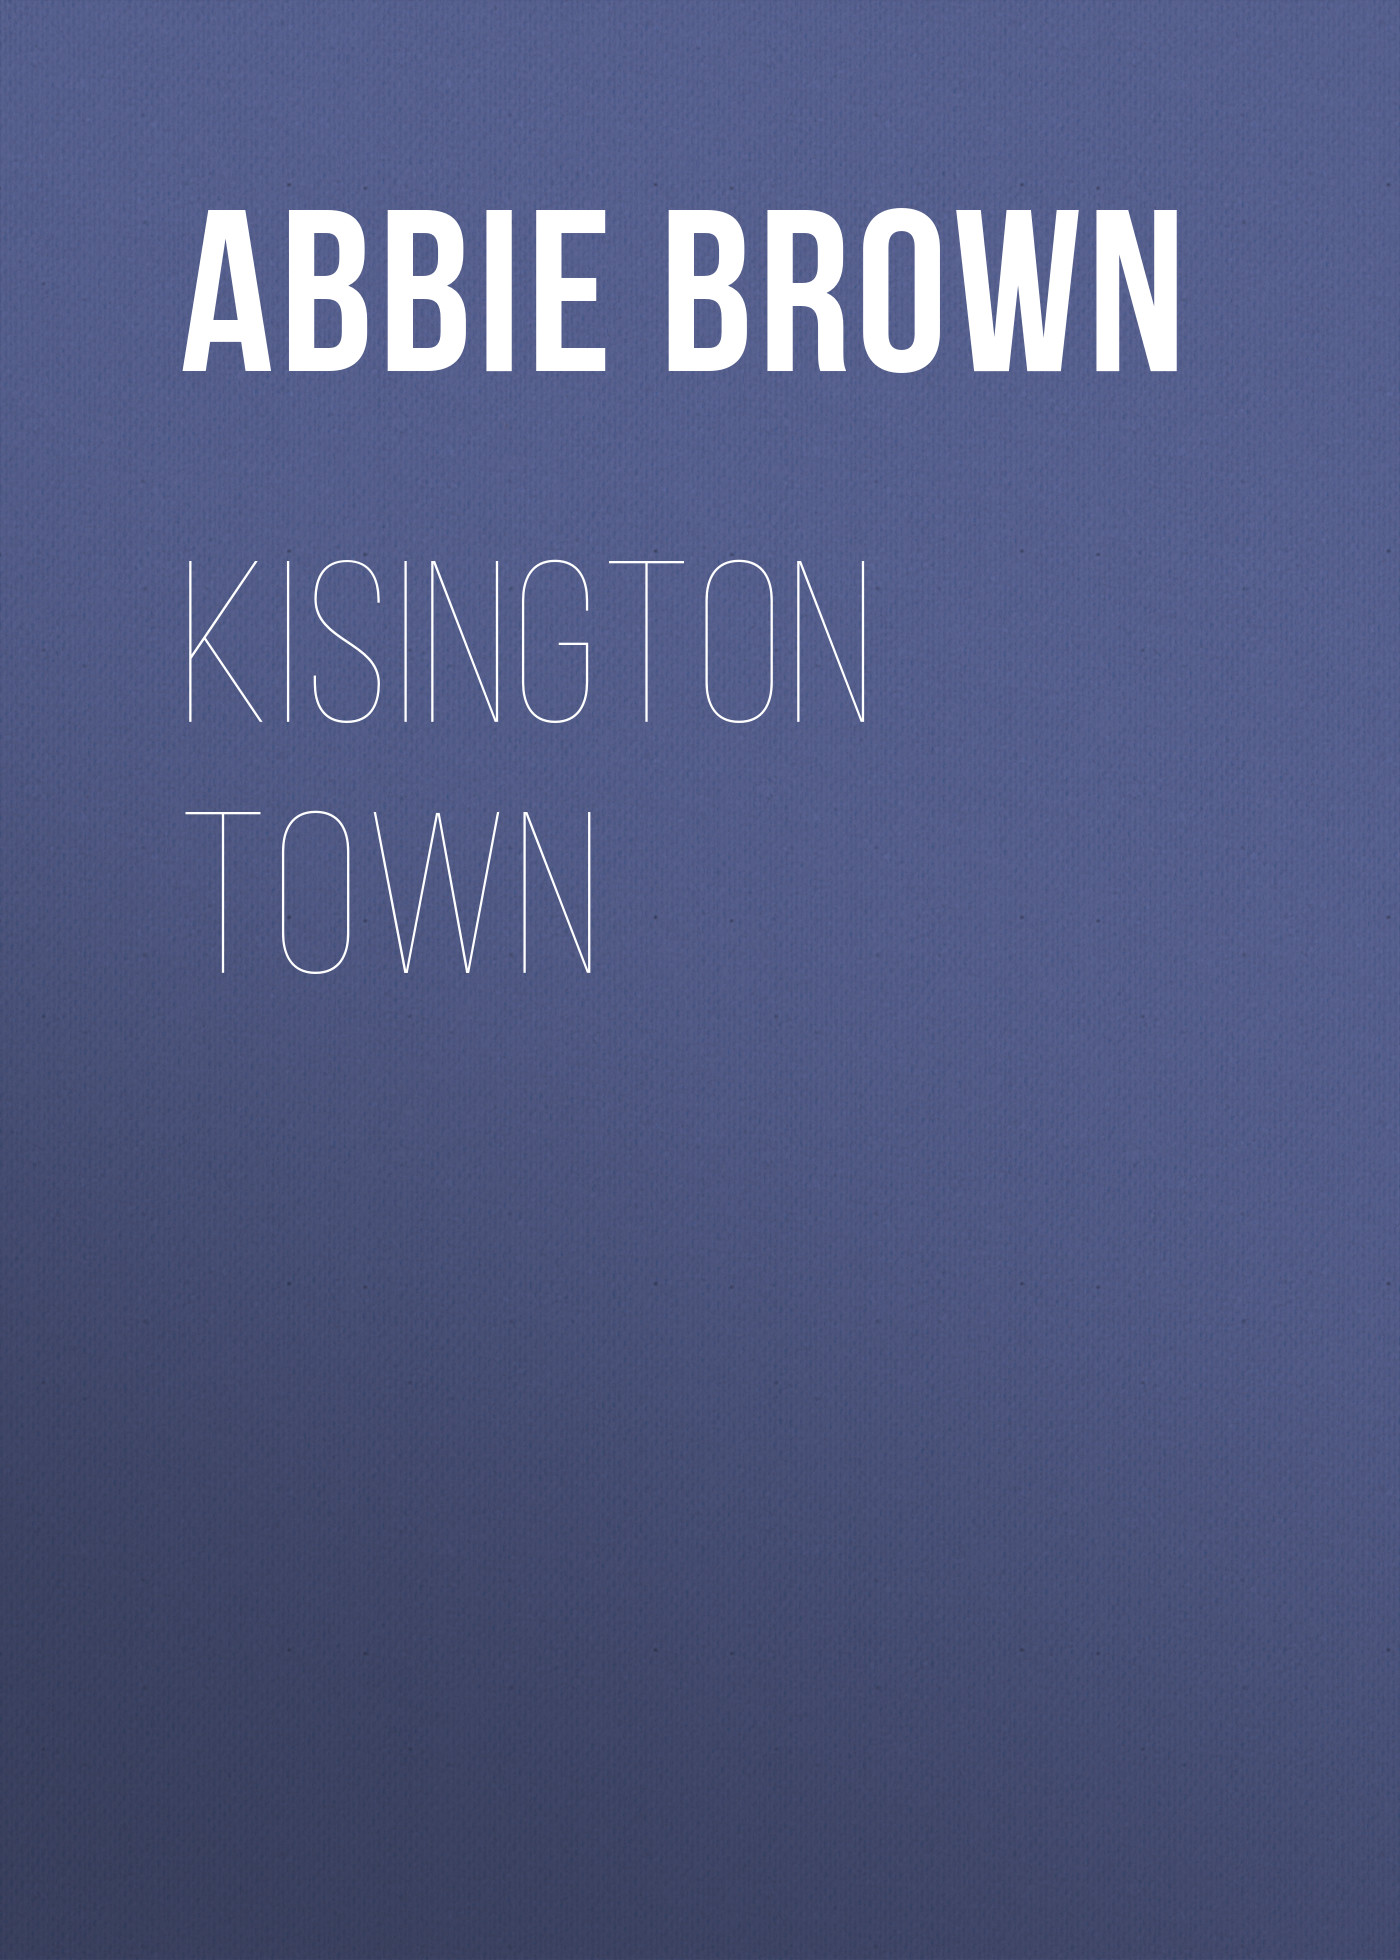 Книга Kisington Town из серии , созданная Abbie Brown, может относится к жанру Зарубежная старинная литература, Зарубежная классика. Стоимость электронной книги Kisington Town с идентификатором 24173908 составляет 0 руб.